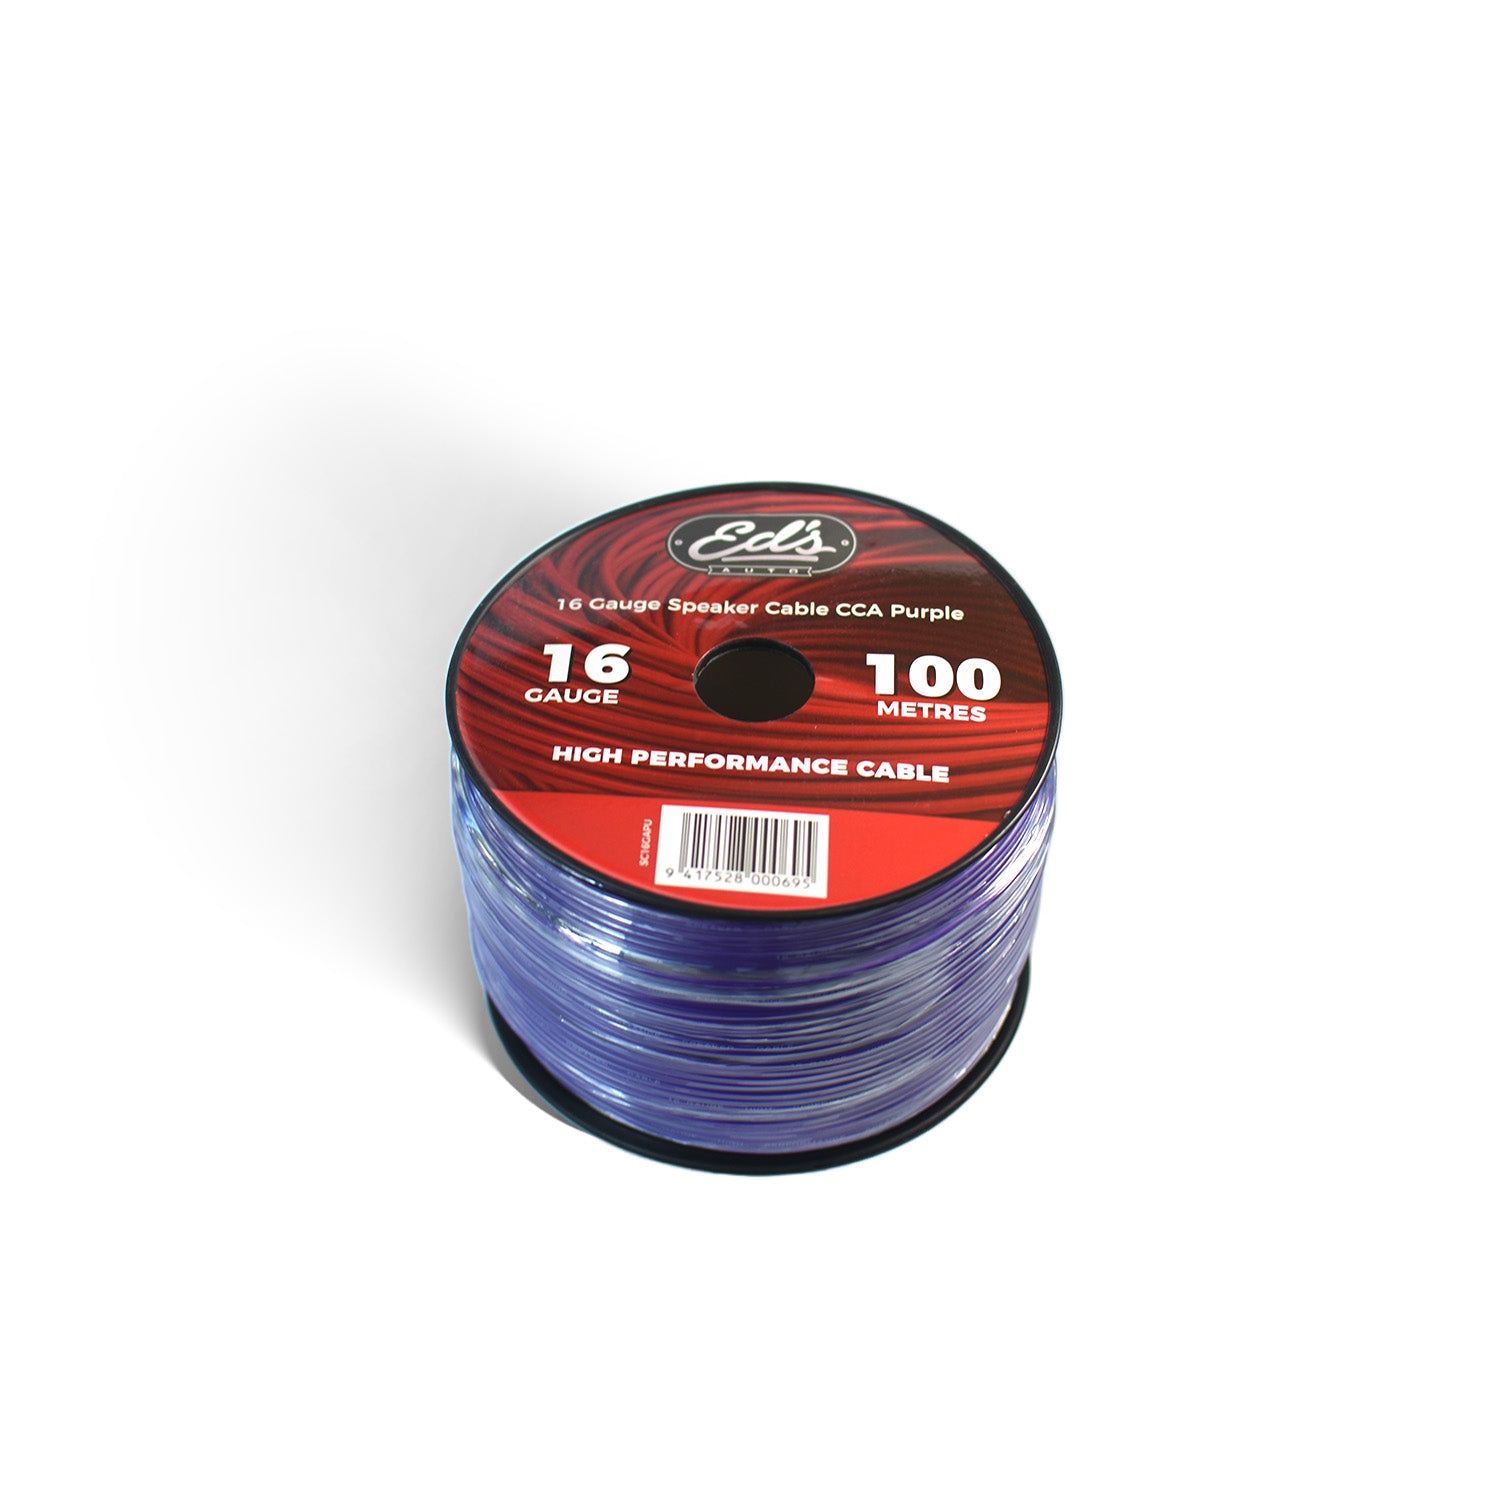 Eds 16 Gauge Speaker Cable Cca 100M Purple